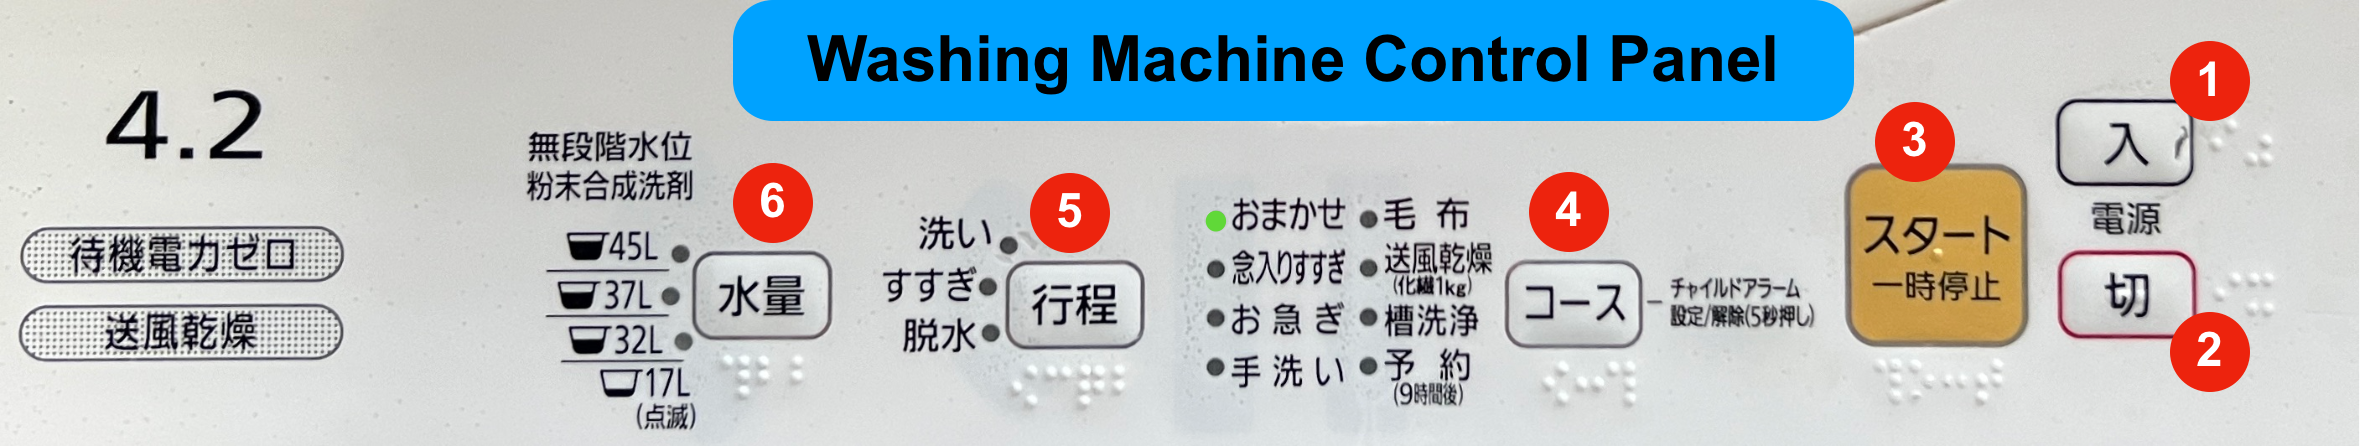 How to use Japanese Washing Machine